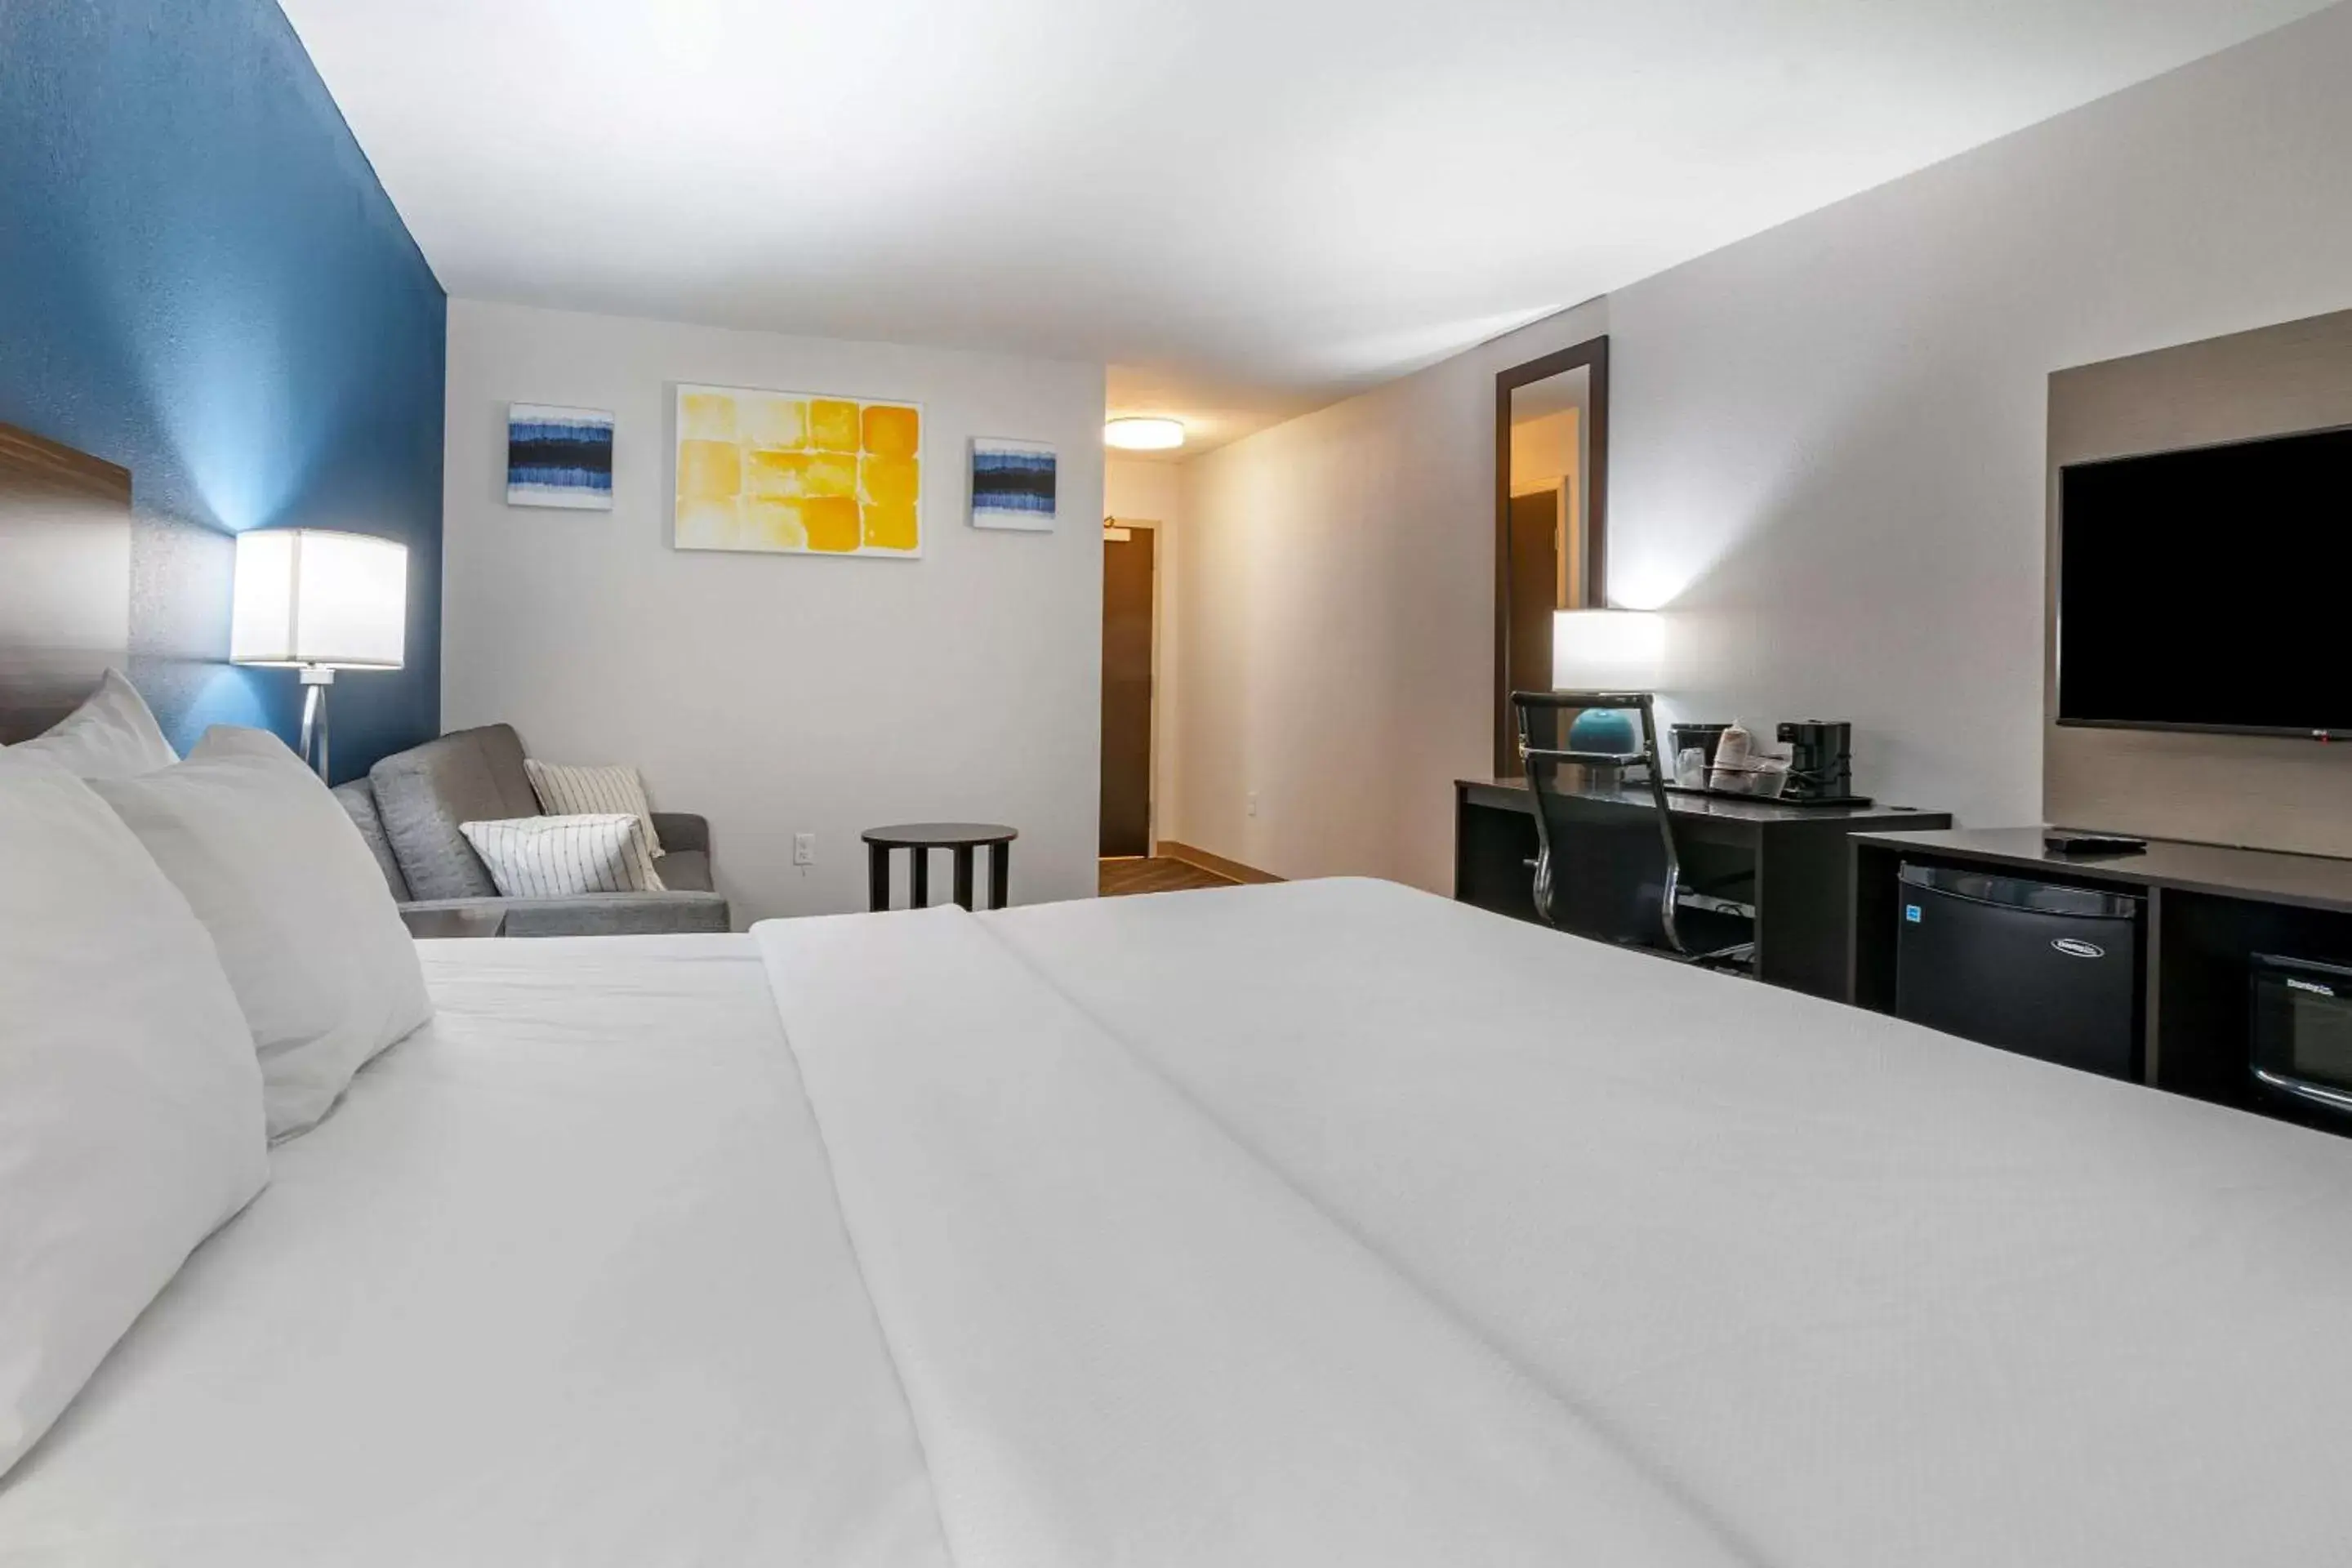 Bedroom, Bed in Comfort Inn St Louis - Airport